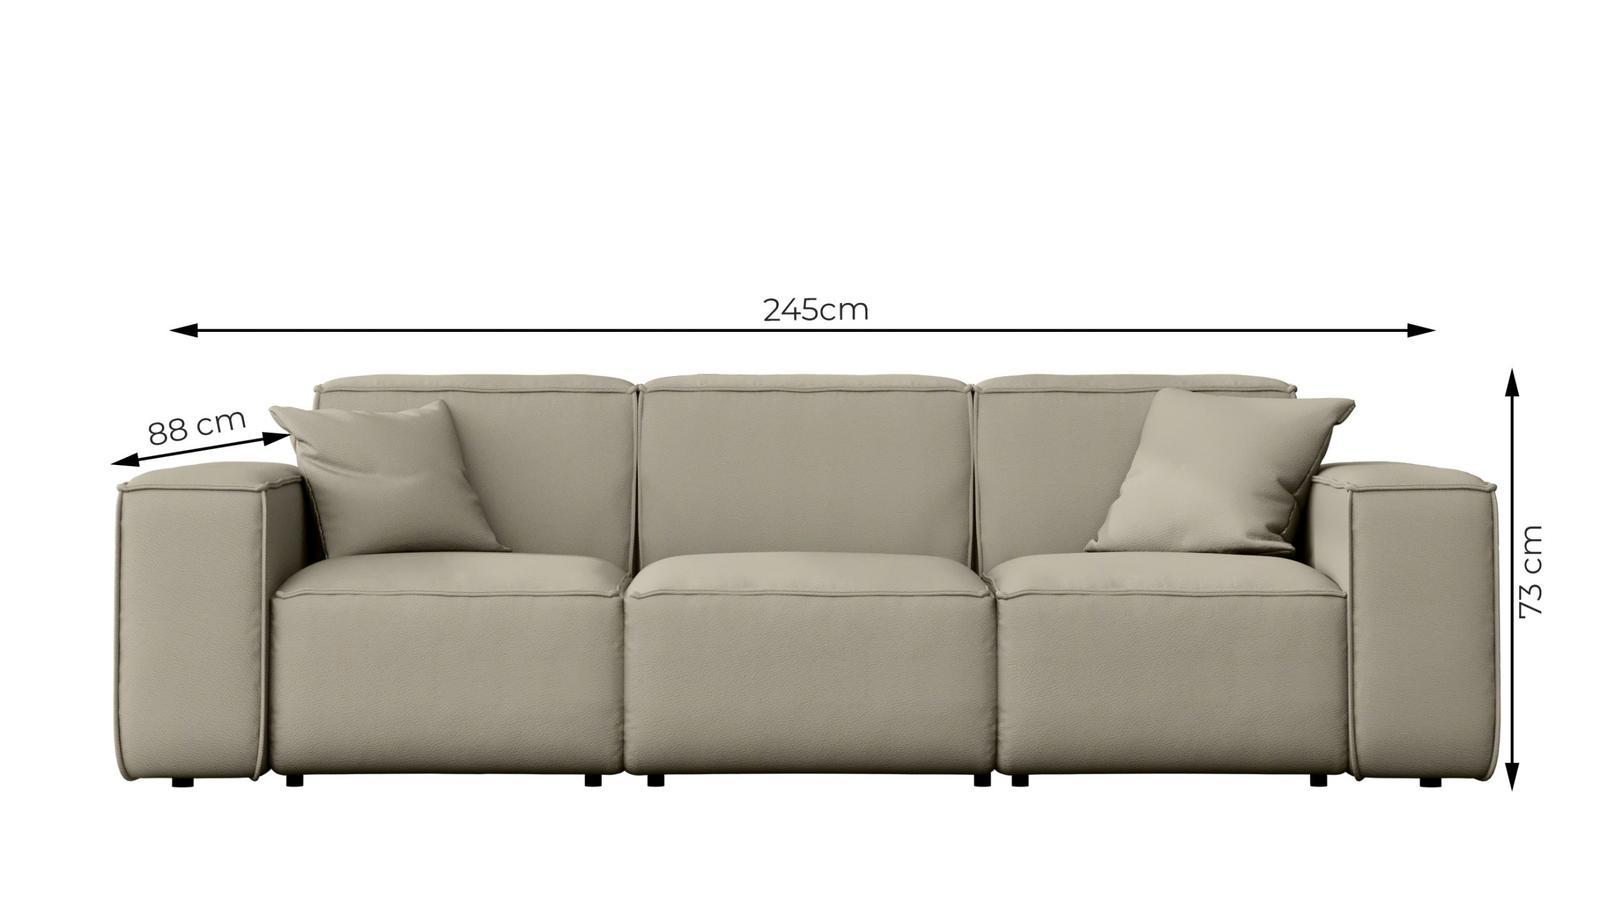 Sofa ogrodowa MALIBU 245x103x88 cm wodoodporna UV 3-os + 2 poduszki do ogrodu czarna nr. 3